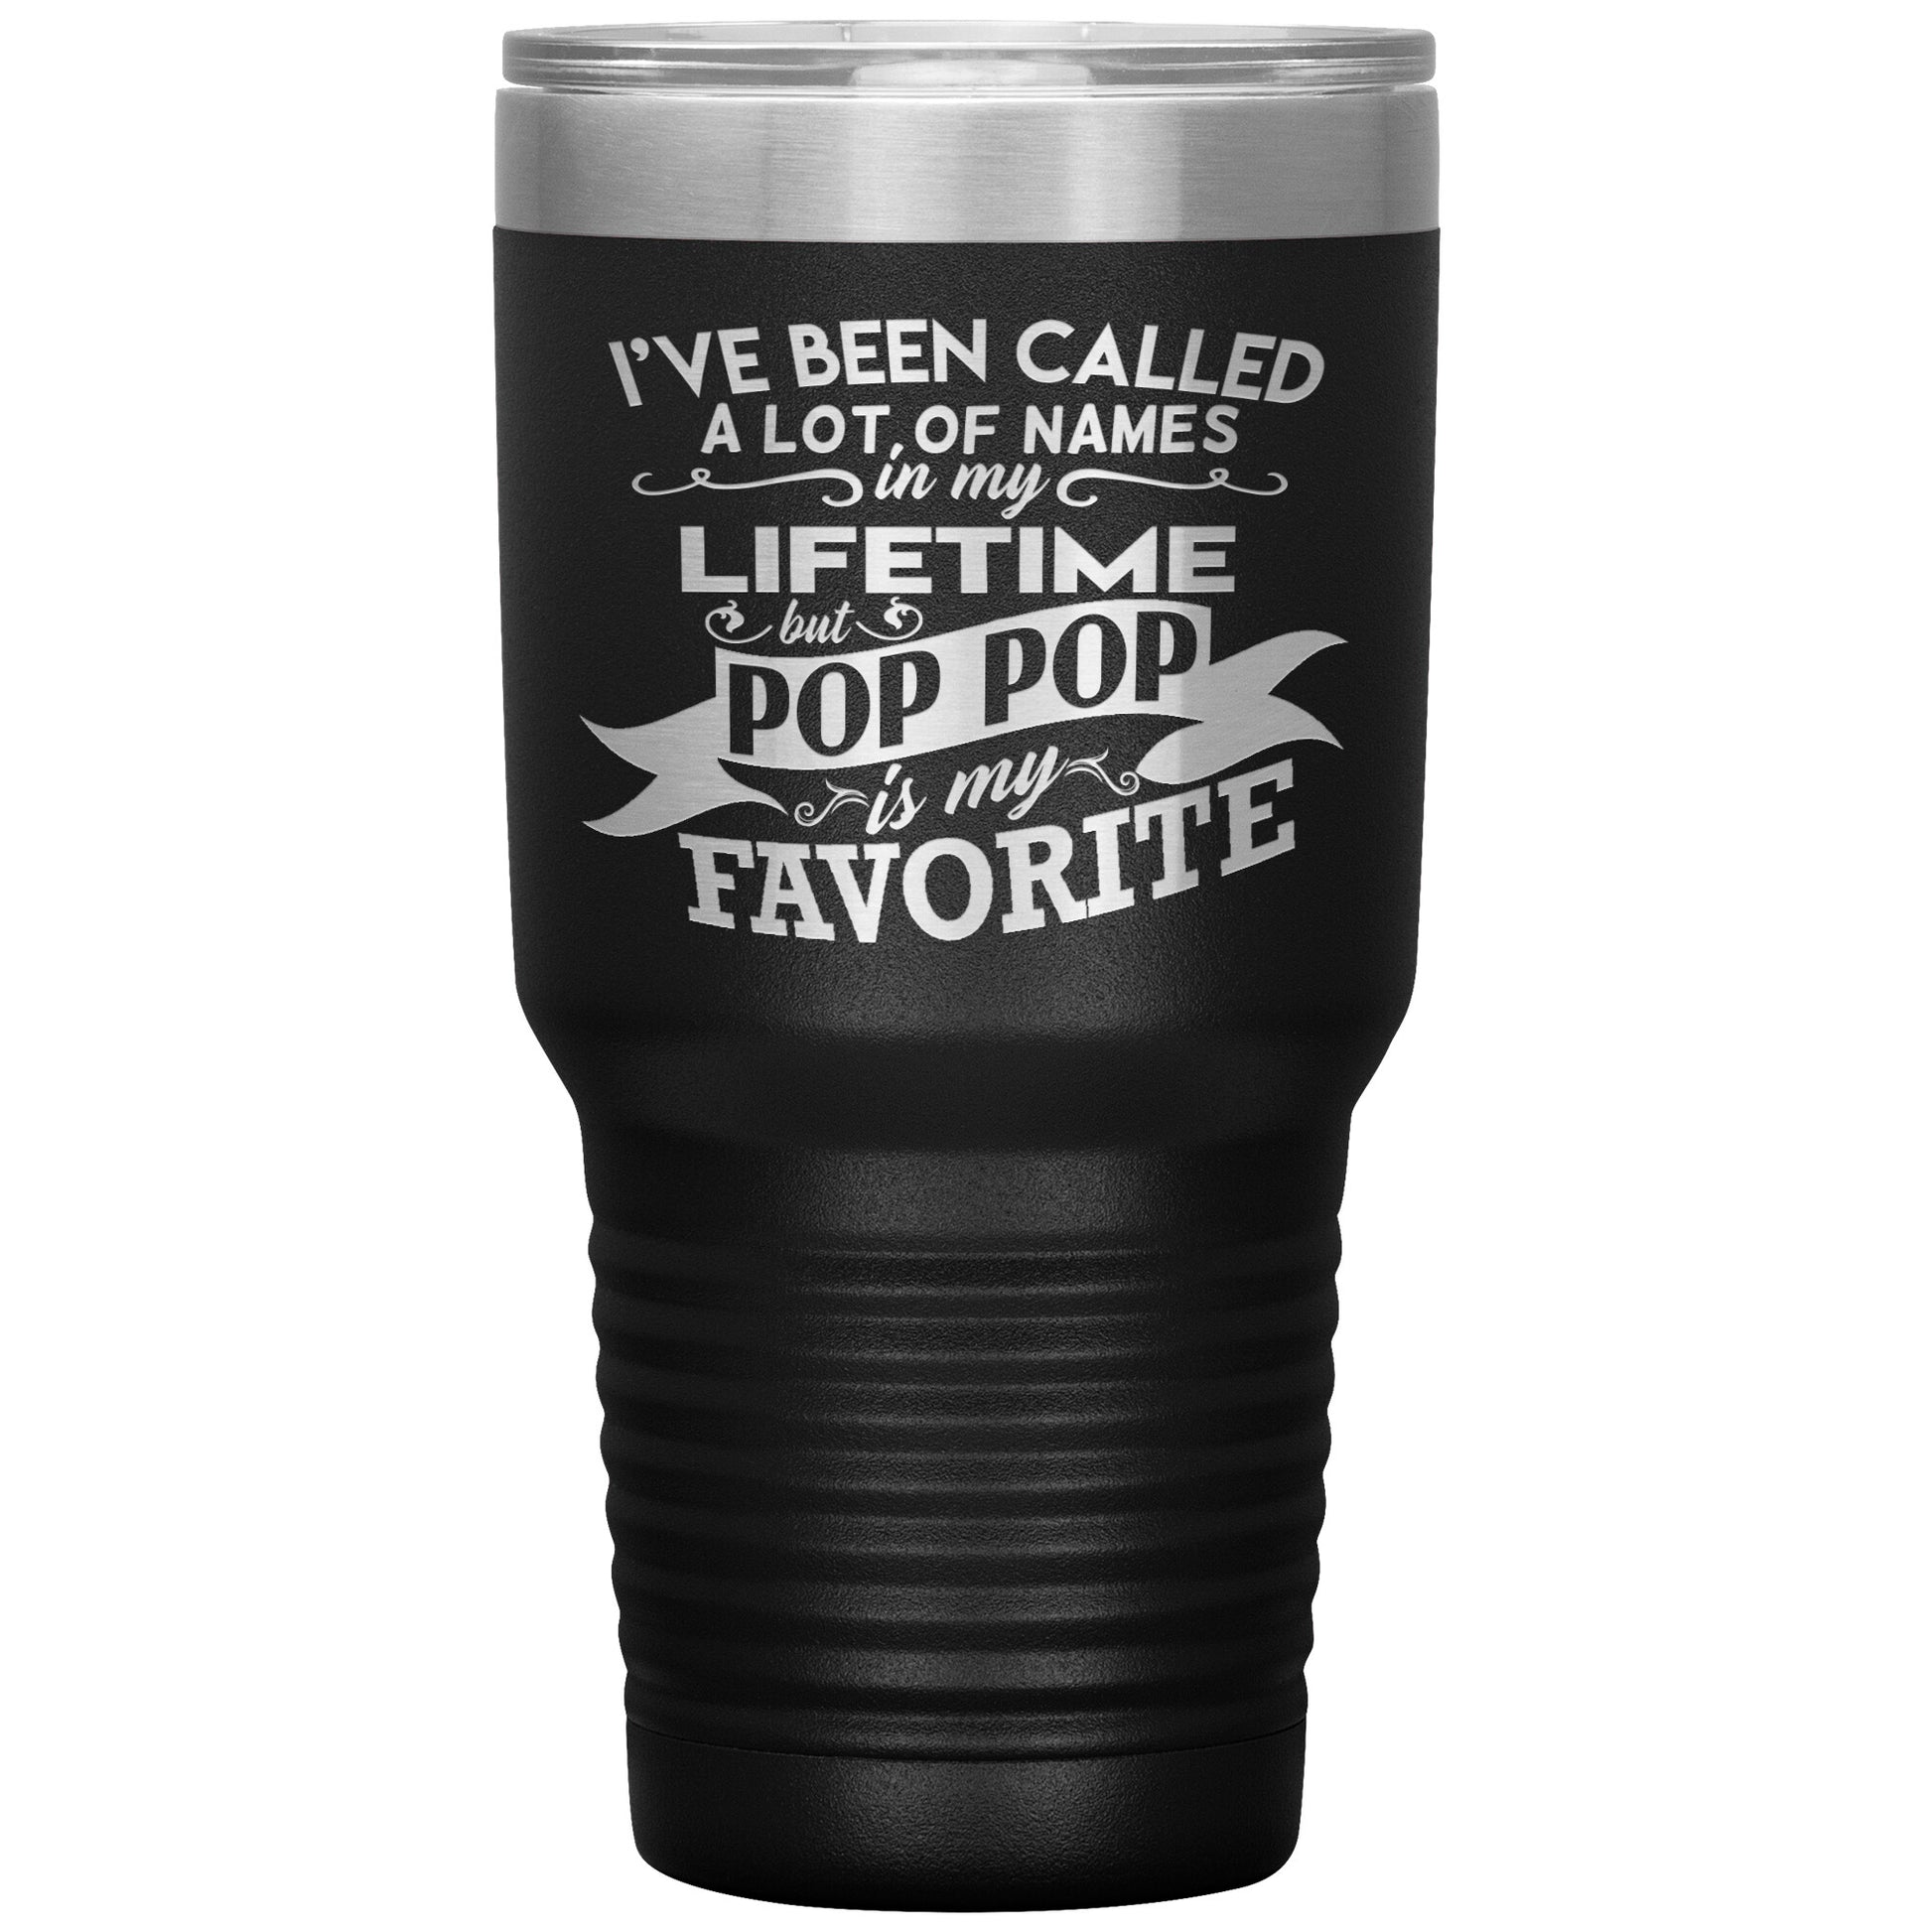 I've Been Called Pop Pop is My Favorite Tumbler